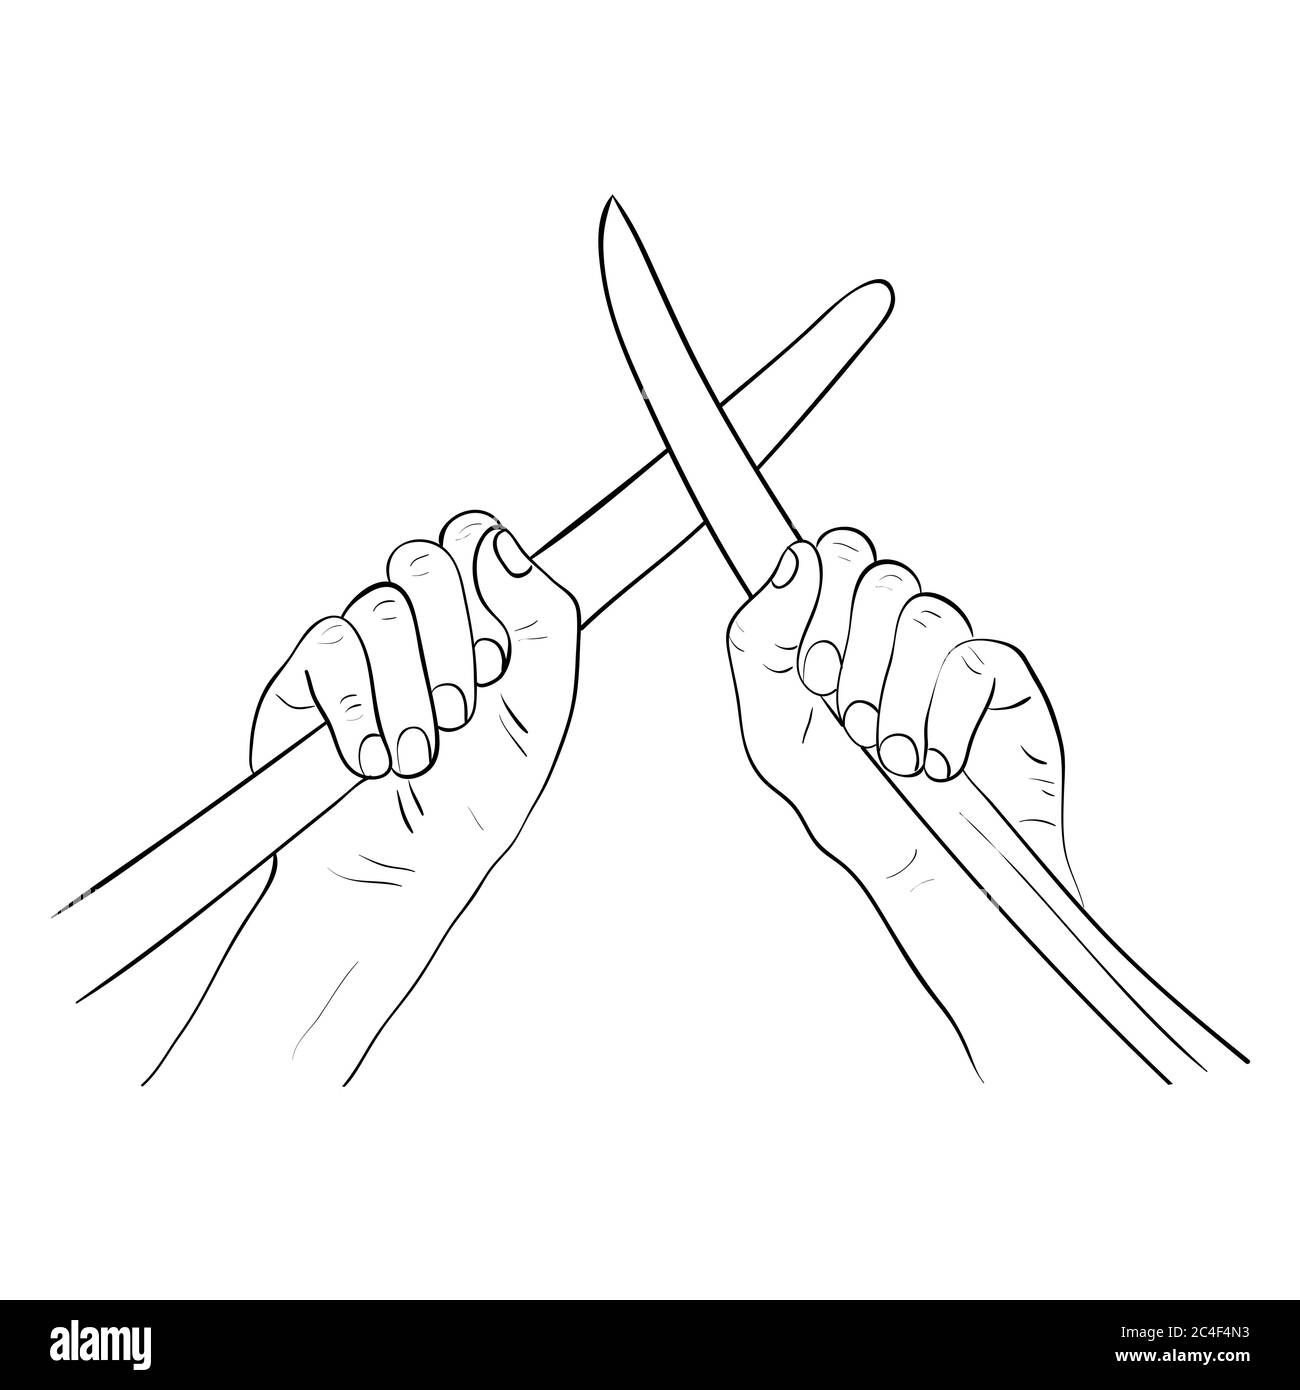 Les mains brisent un combat en décomposant les lames de l'épée. Illustration vectorielle de dessin animé. Mains tenant des épées croisées. Illustration de Vecteur